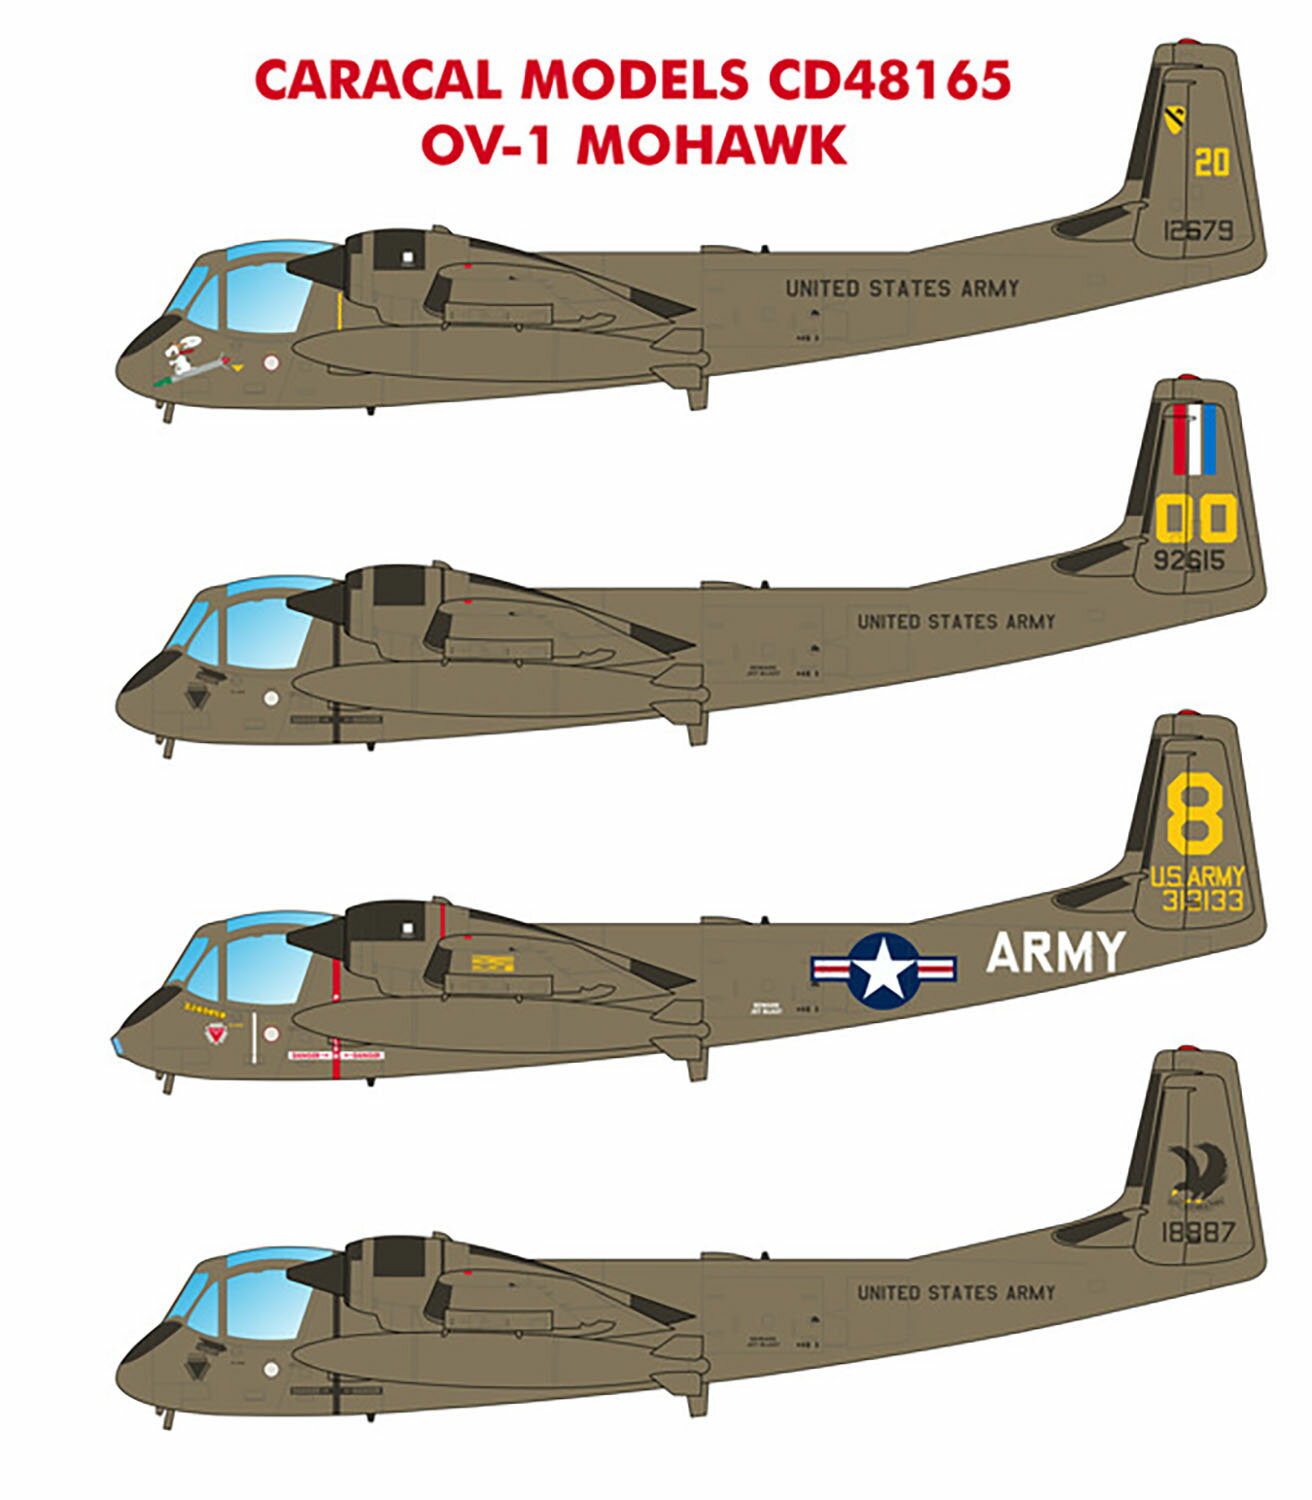 カラカルモデル 1/48 アメリカ軍 OV-1モホーク デカール CD48165